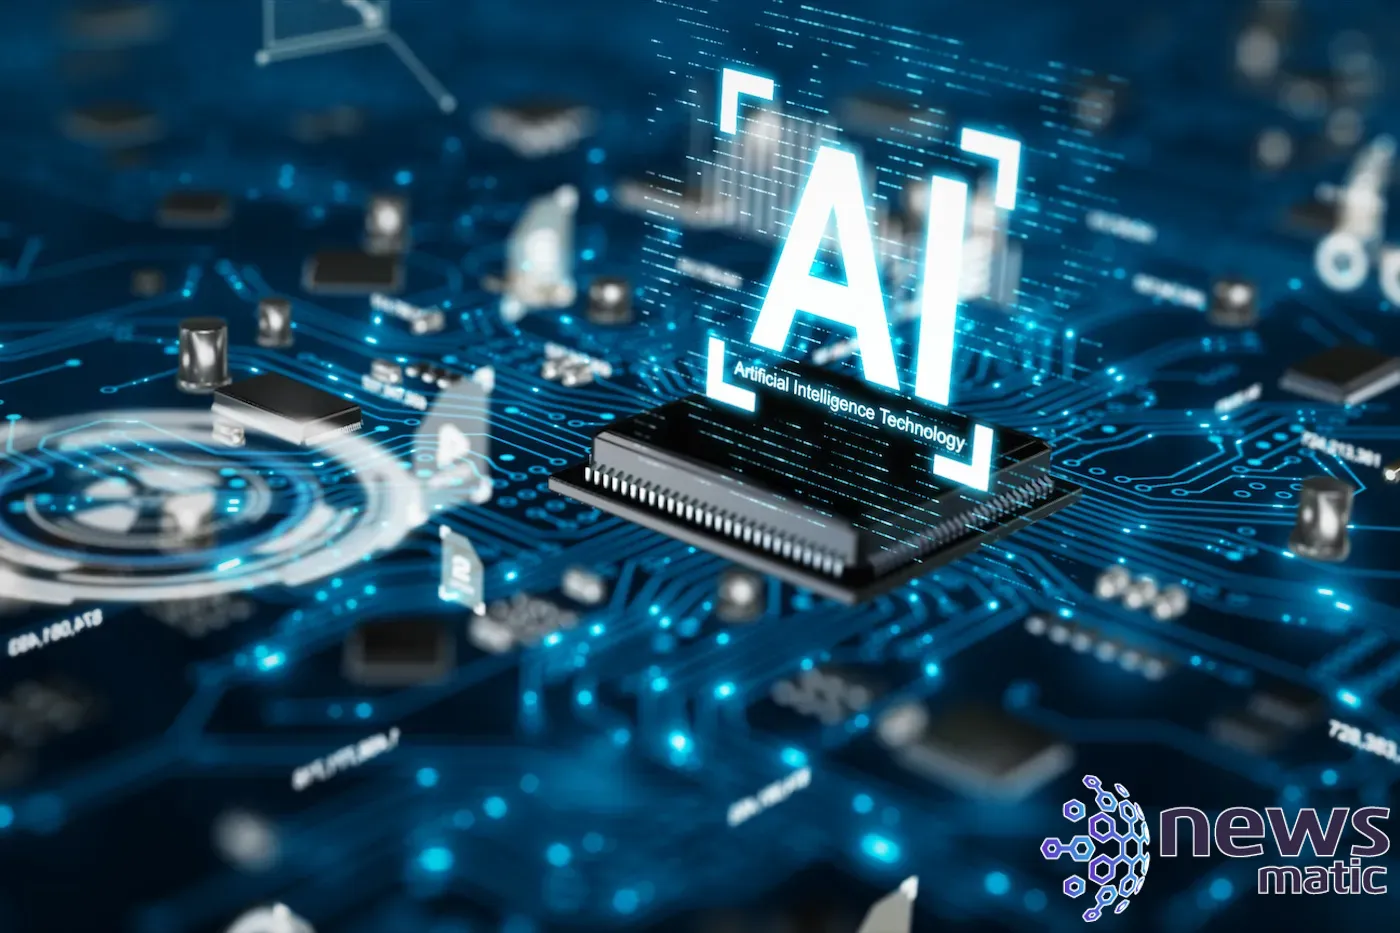 Iris Technology lanza la versión beta de webAI - Inteligencia artificial | Imagen 1 Newsmatic